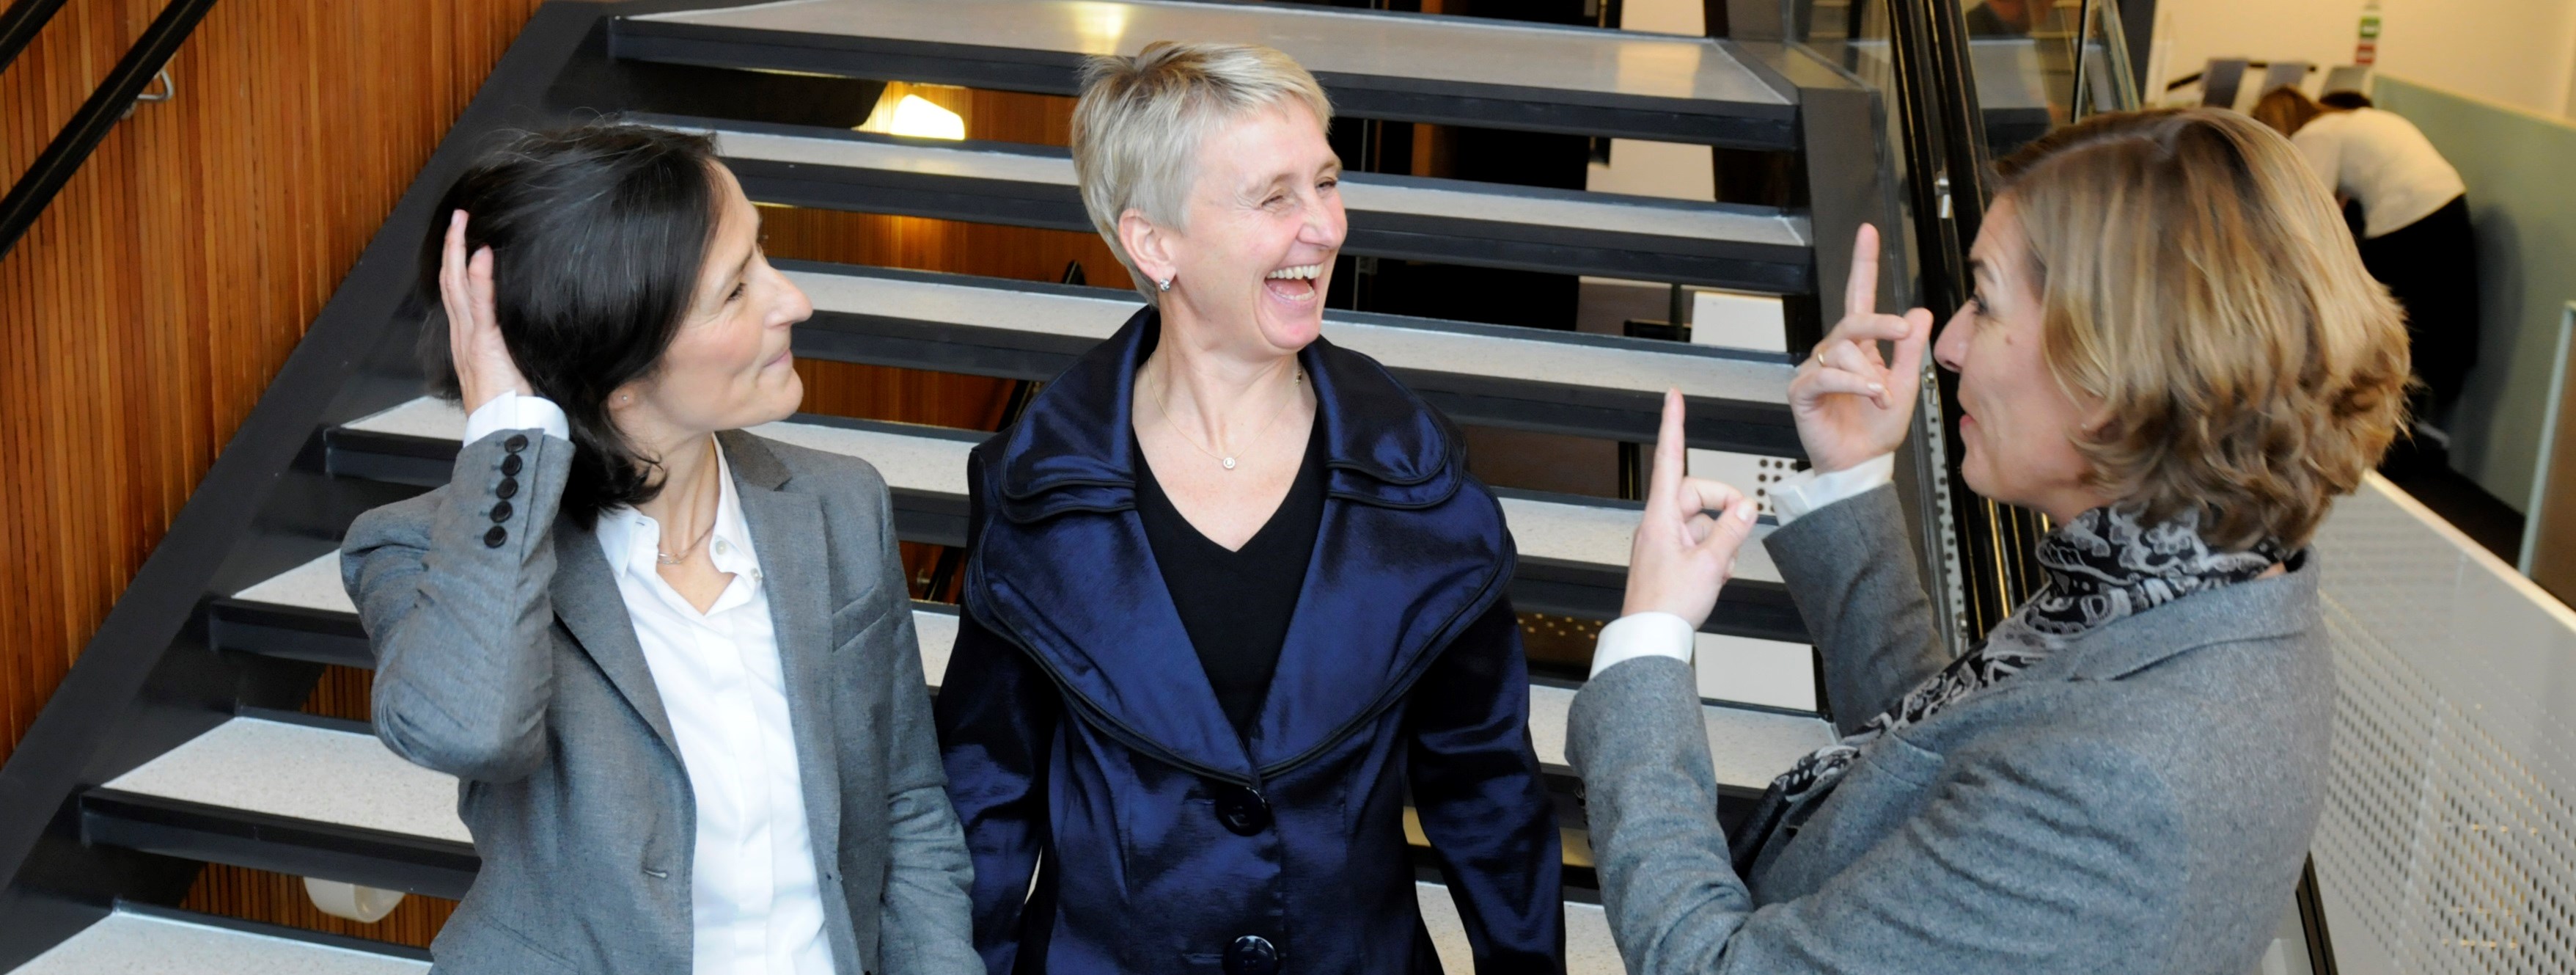 NHH-professorene Astrid Kunze (til venstre), Karin S. Thorburn og Inger G. Stensaker, alle ved NHH. 